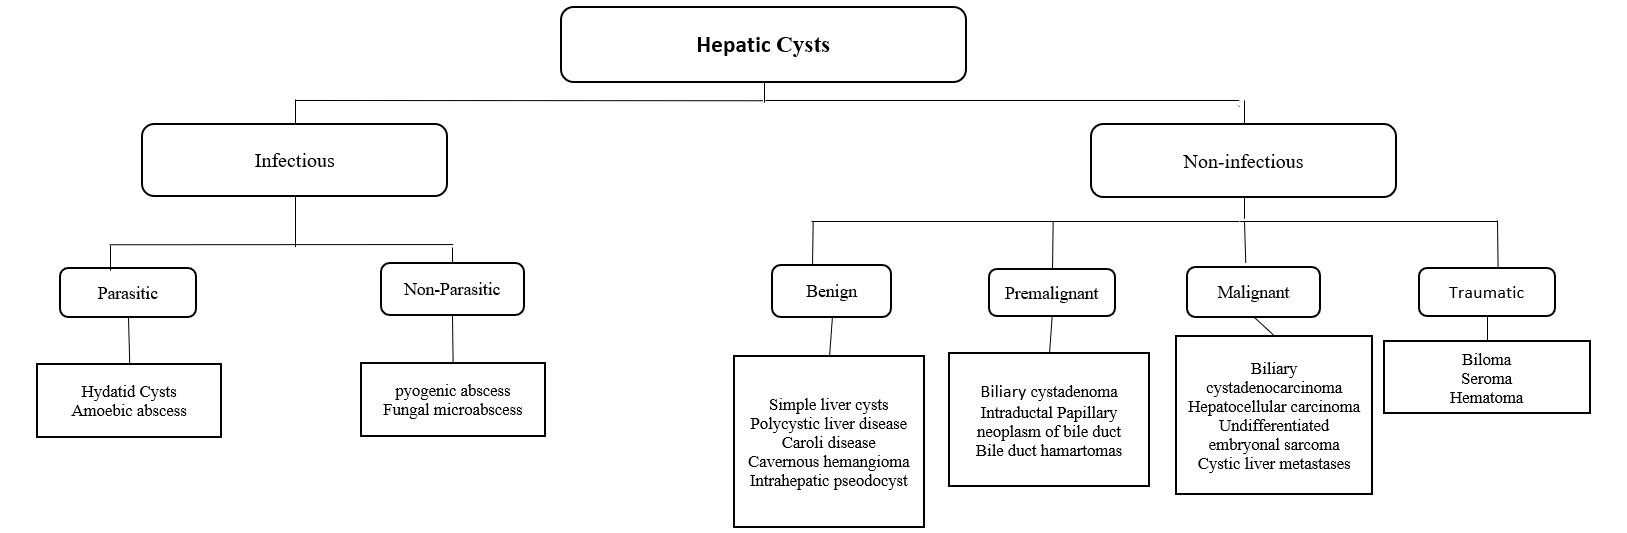 Hepatic Cysts Flow Diagram  